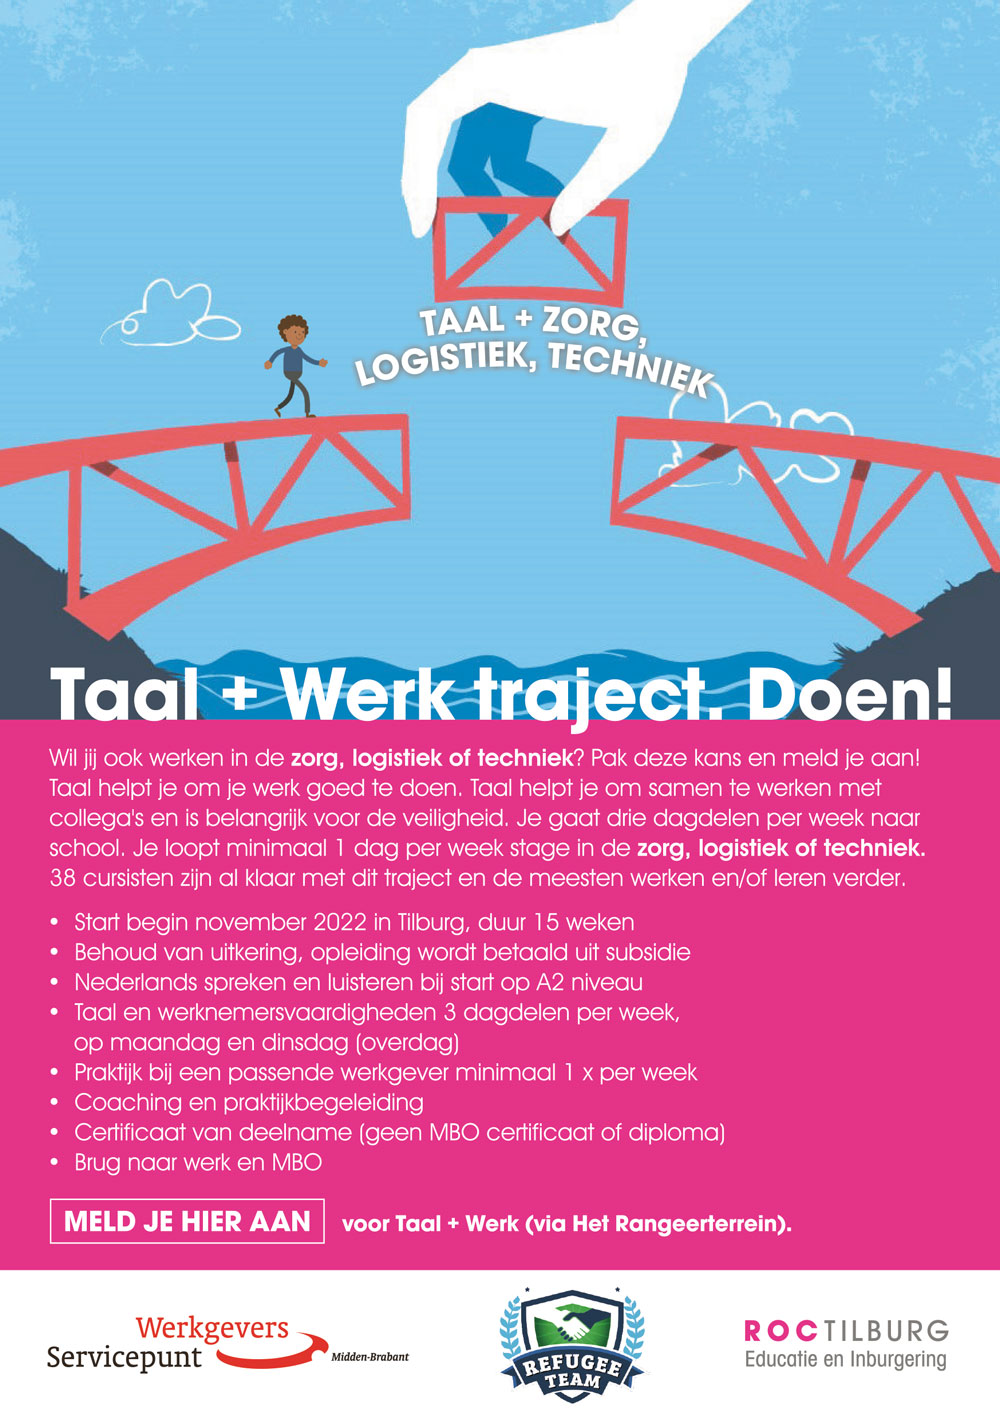 Taal + Werk traject. Doen!